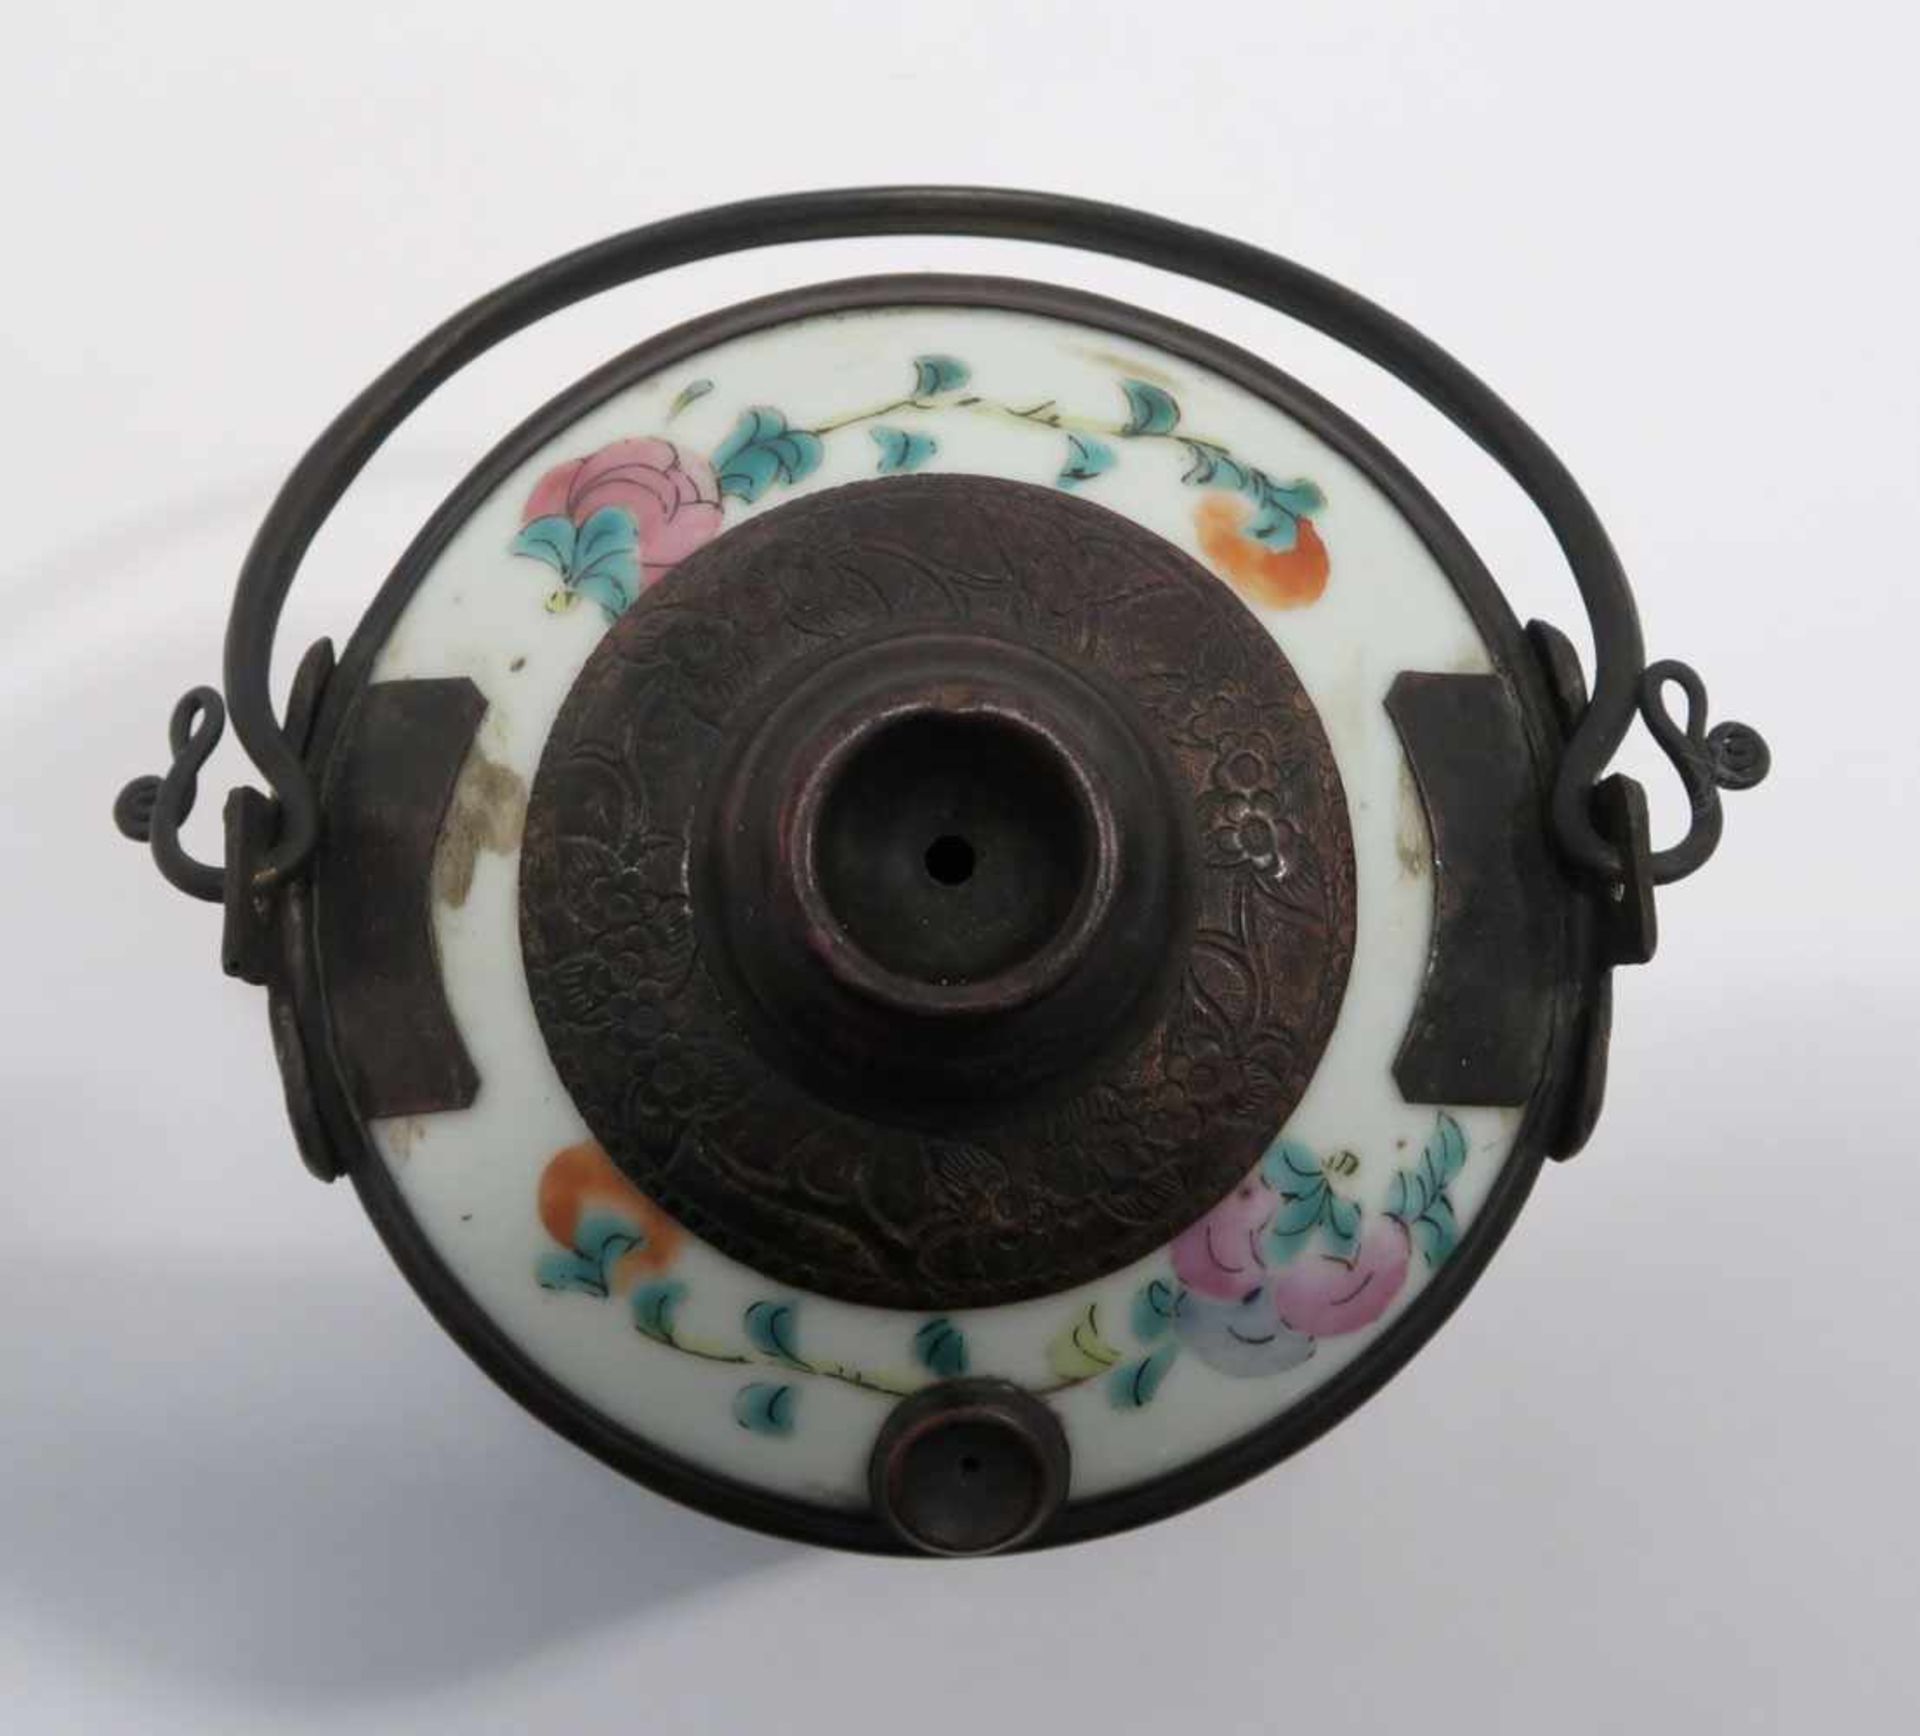 Opiumpfeife / Vase / DeckelgefäßChina. Porzellan, tlw. mit Kupfermontierung. Verschiedene bunte bzw. - Bild 7 aus 21